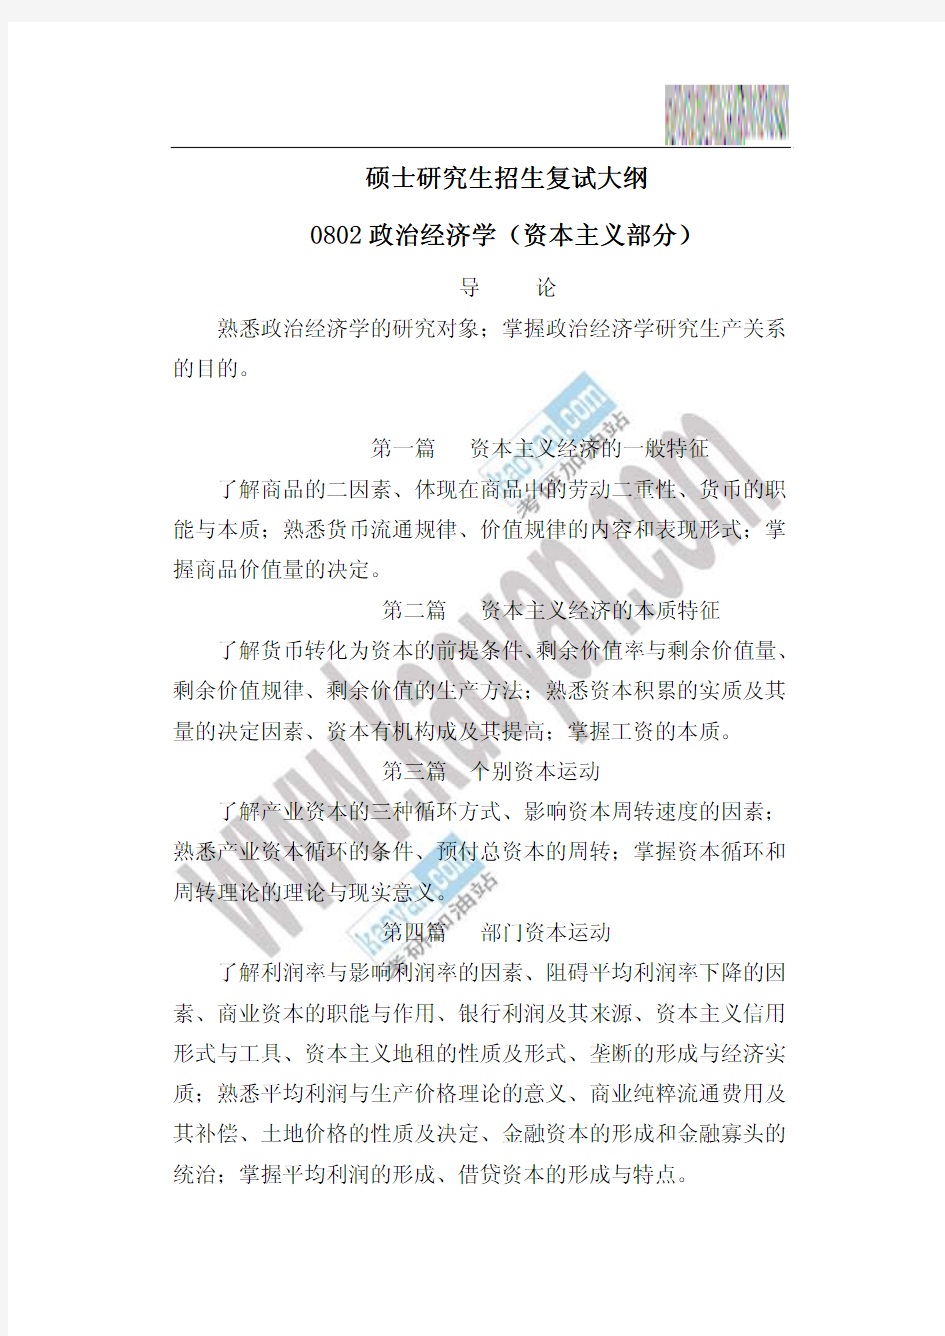 2009年天津工业大学0802政治经济学(资本主义部分)复试大纲